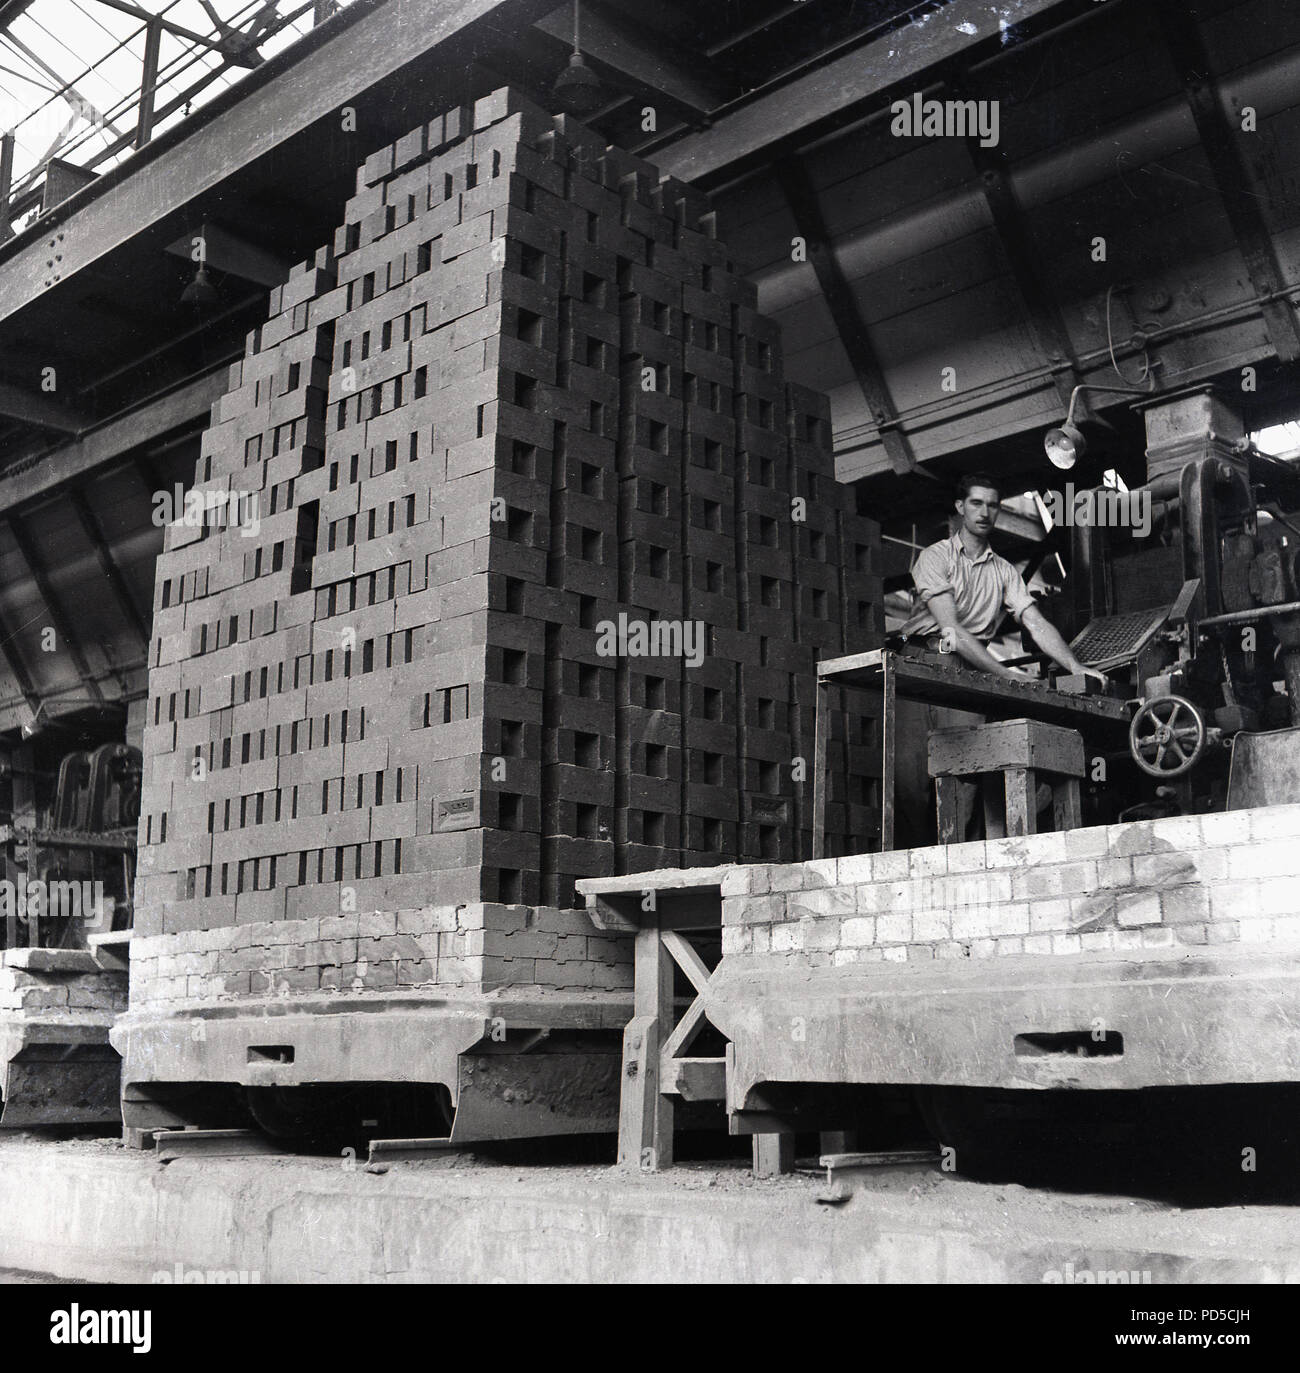 1950 s, London Brick Company, männliche Arbeiter am Band Maschine besidee ein großer grosser kürzlich gebranntem Ton Steine stapeln, Stewartby, Bedford, England, UK. Stockfoto